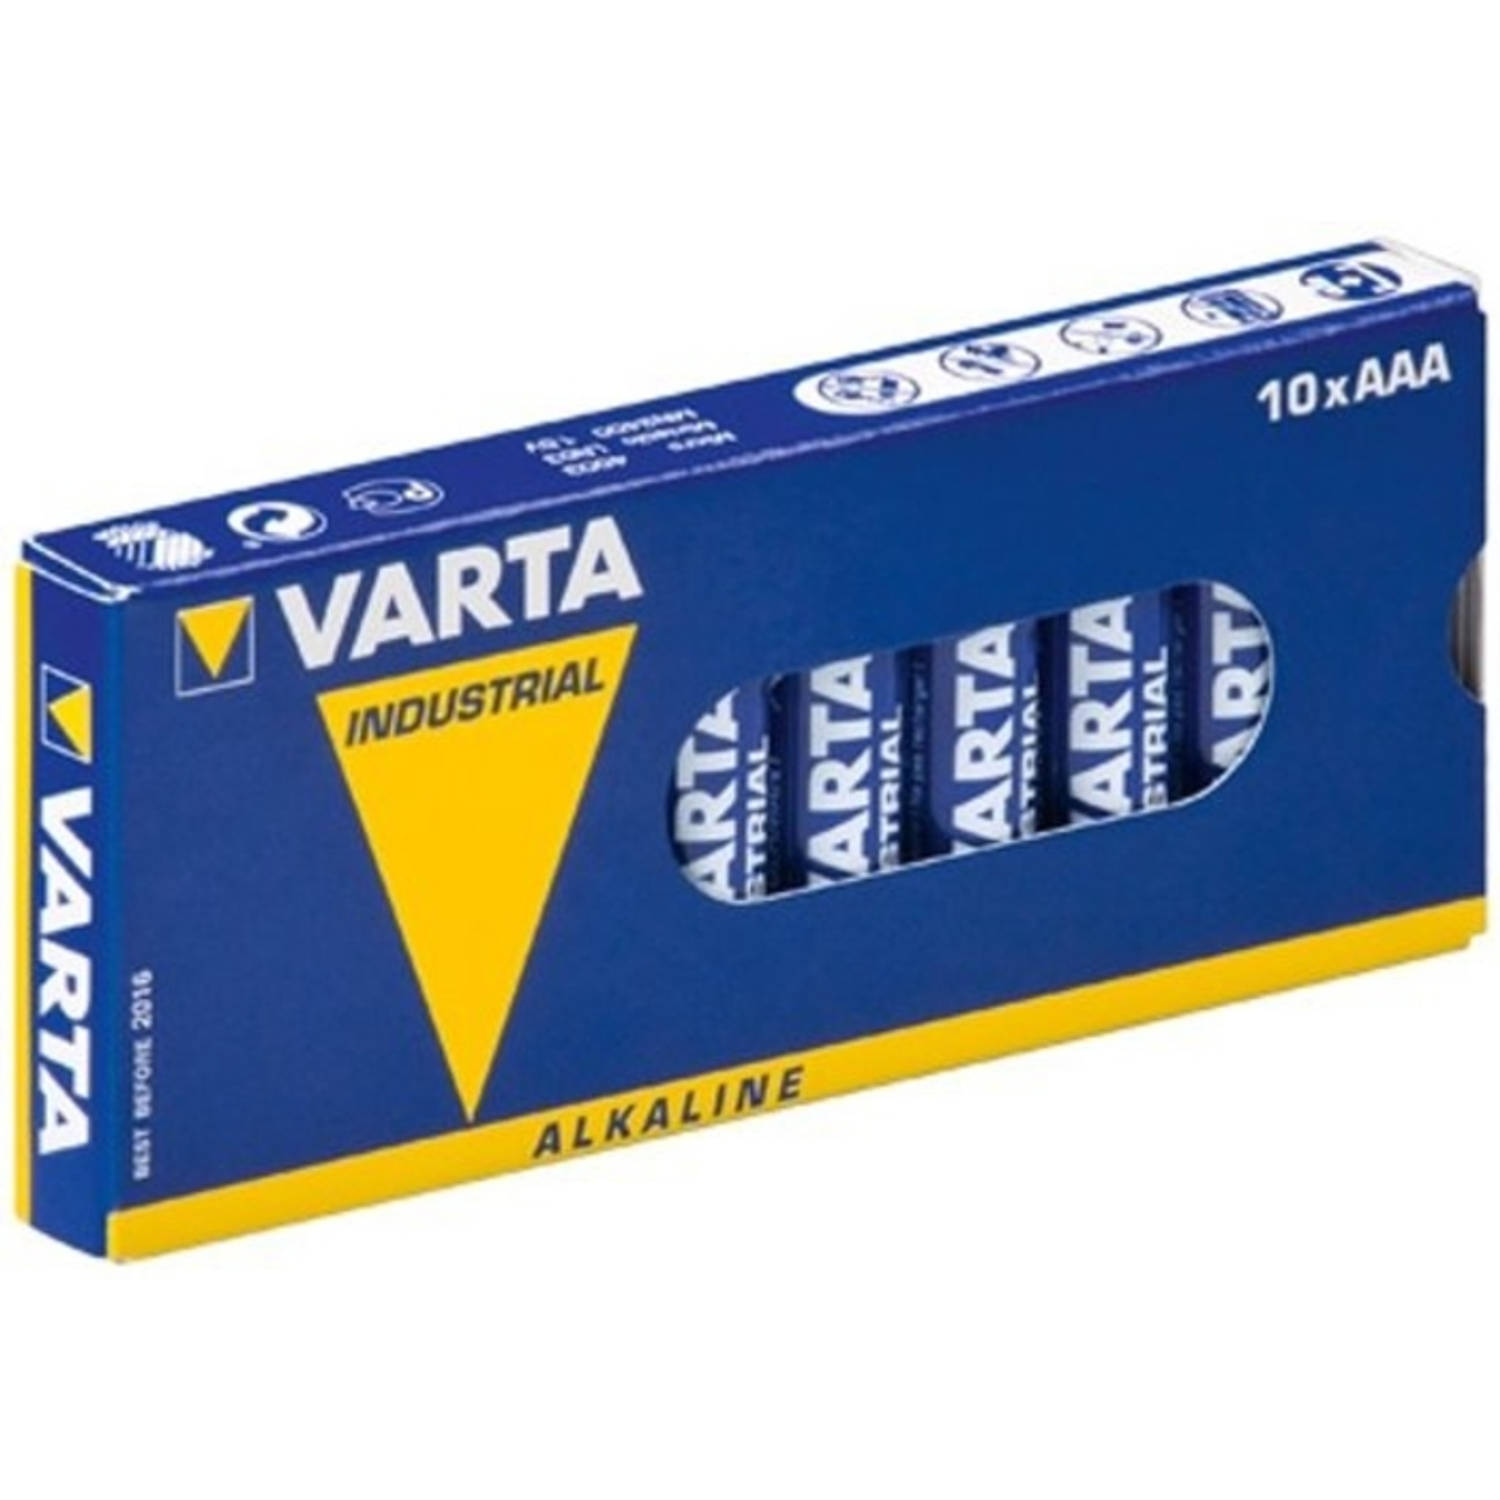 Varta Industrial AAA 10-Box